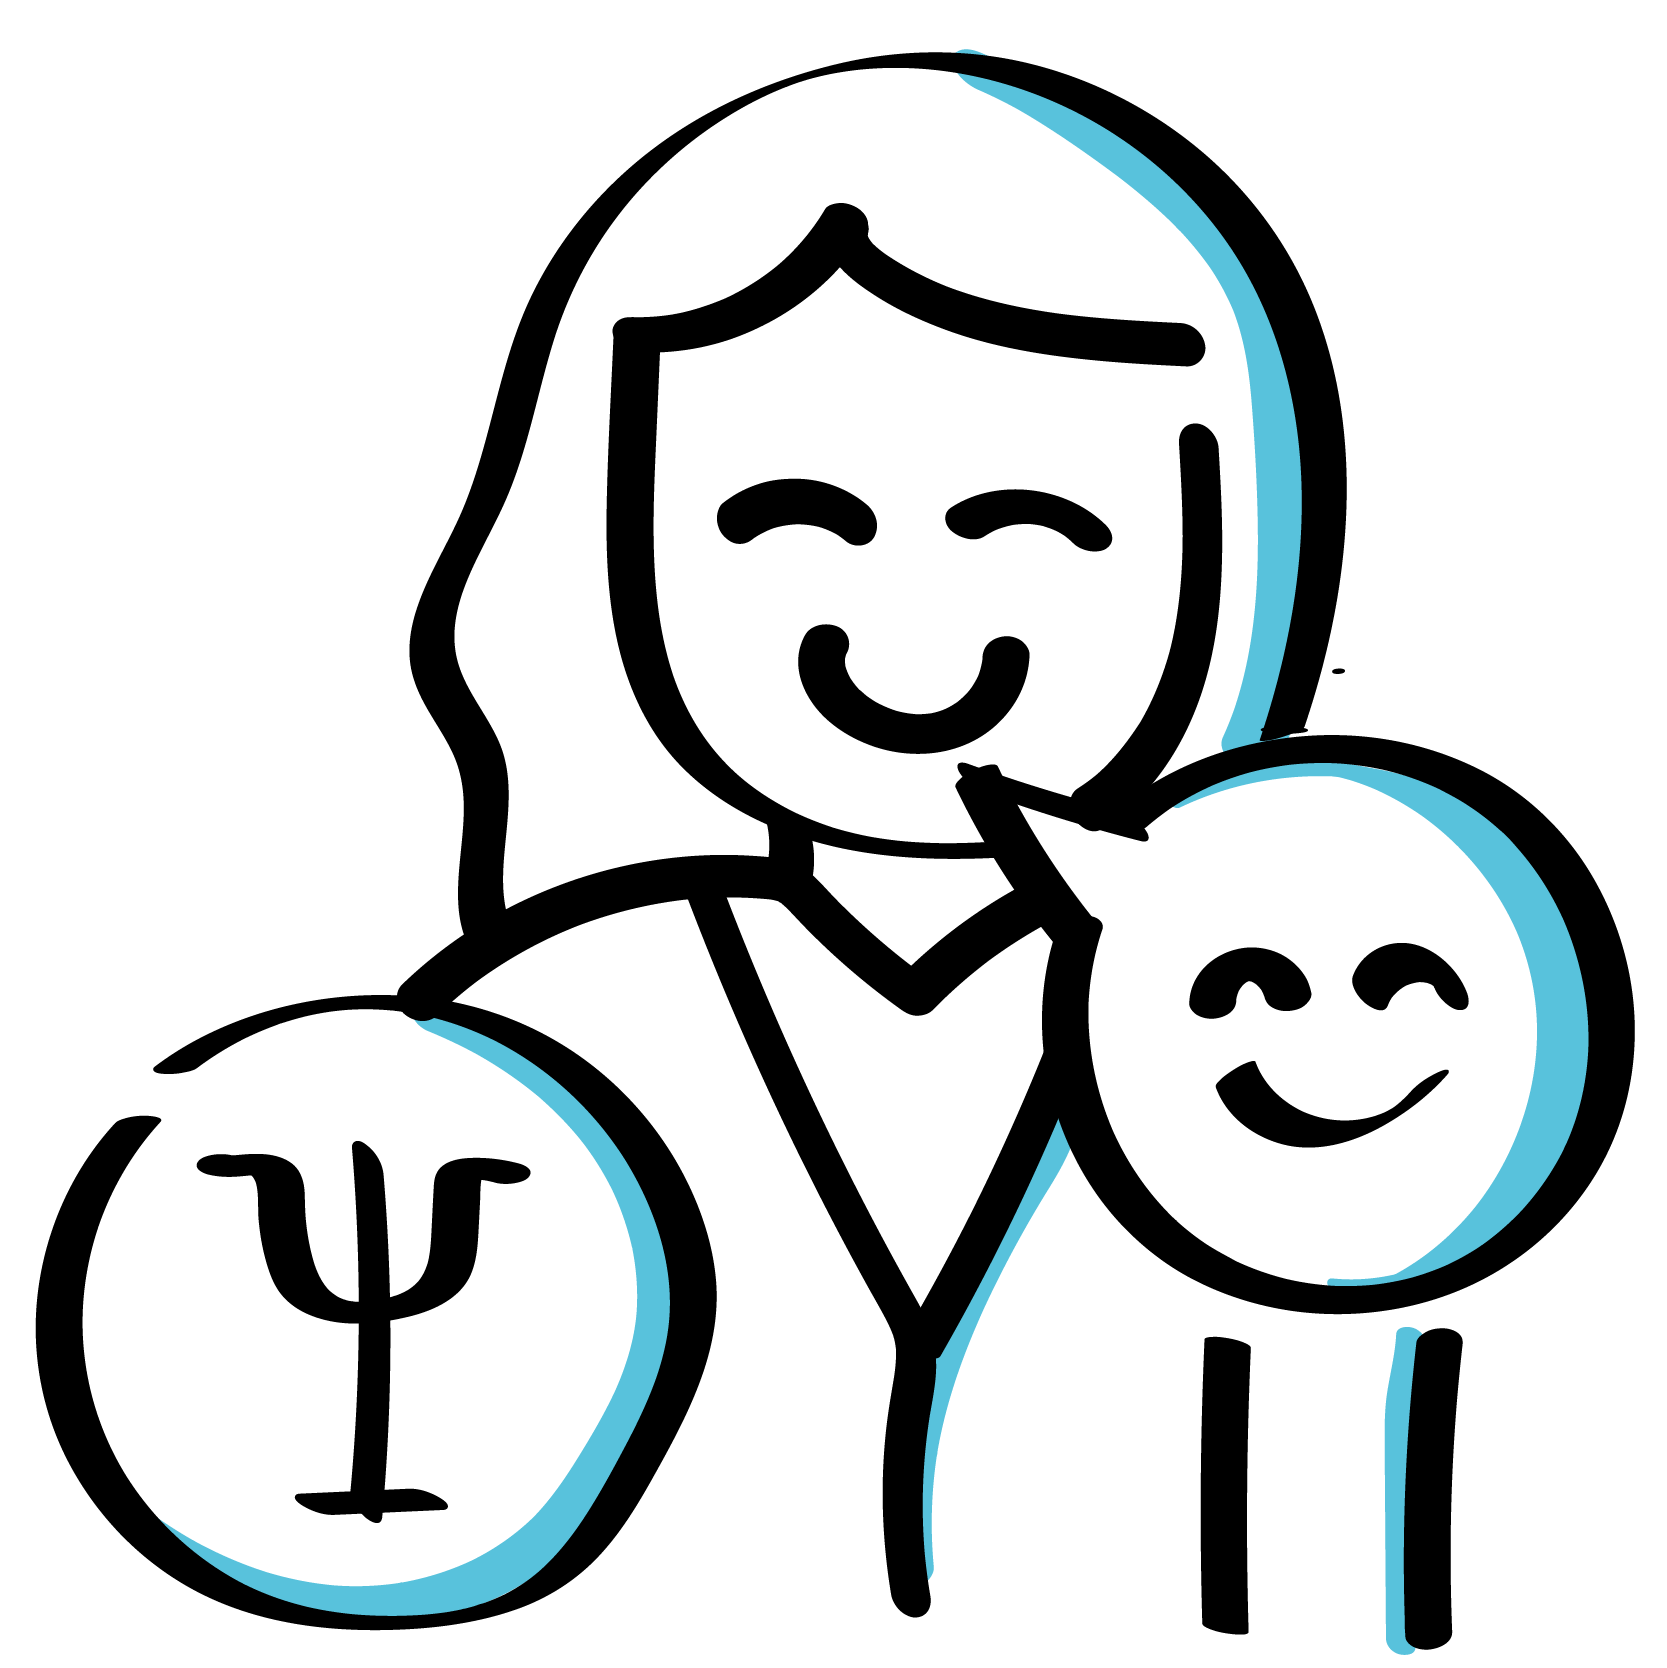 icone com simbolo de psicologia e avatar